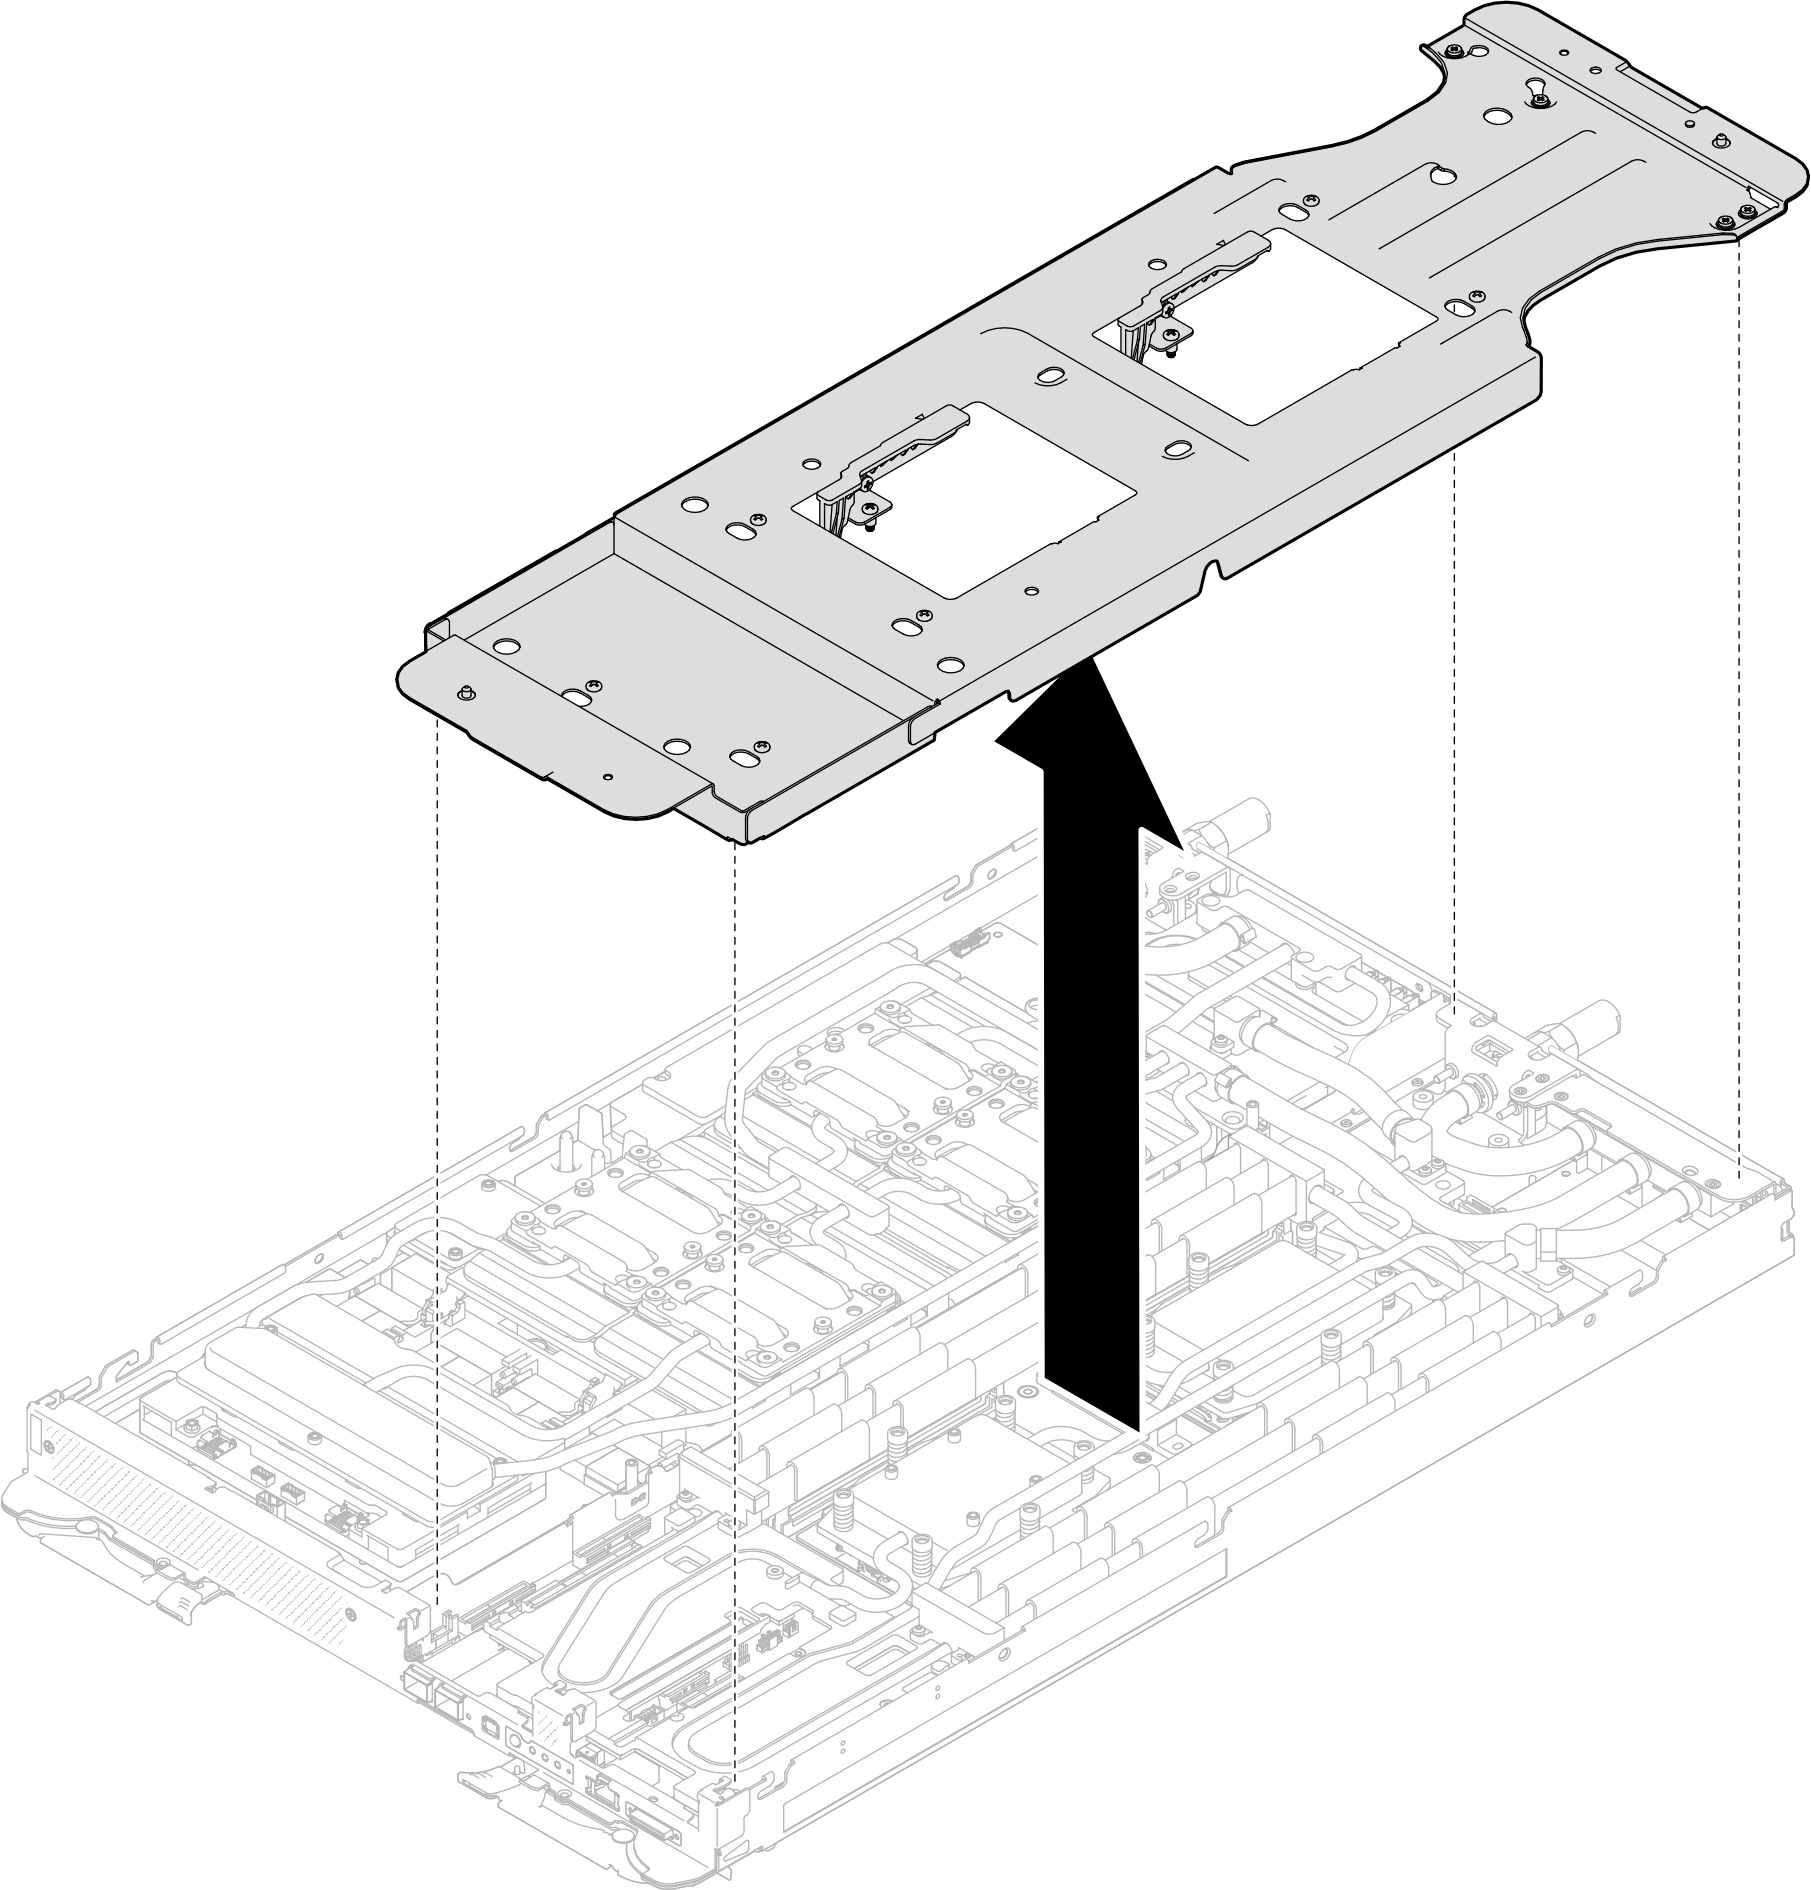 Water loop carrier removal (Compute node)